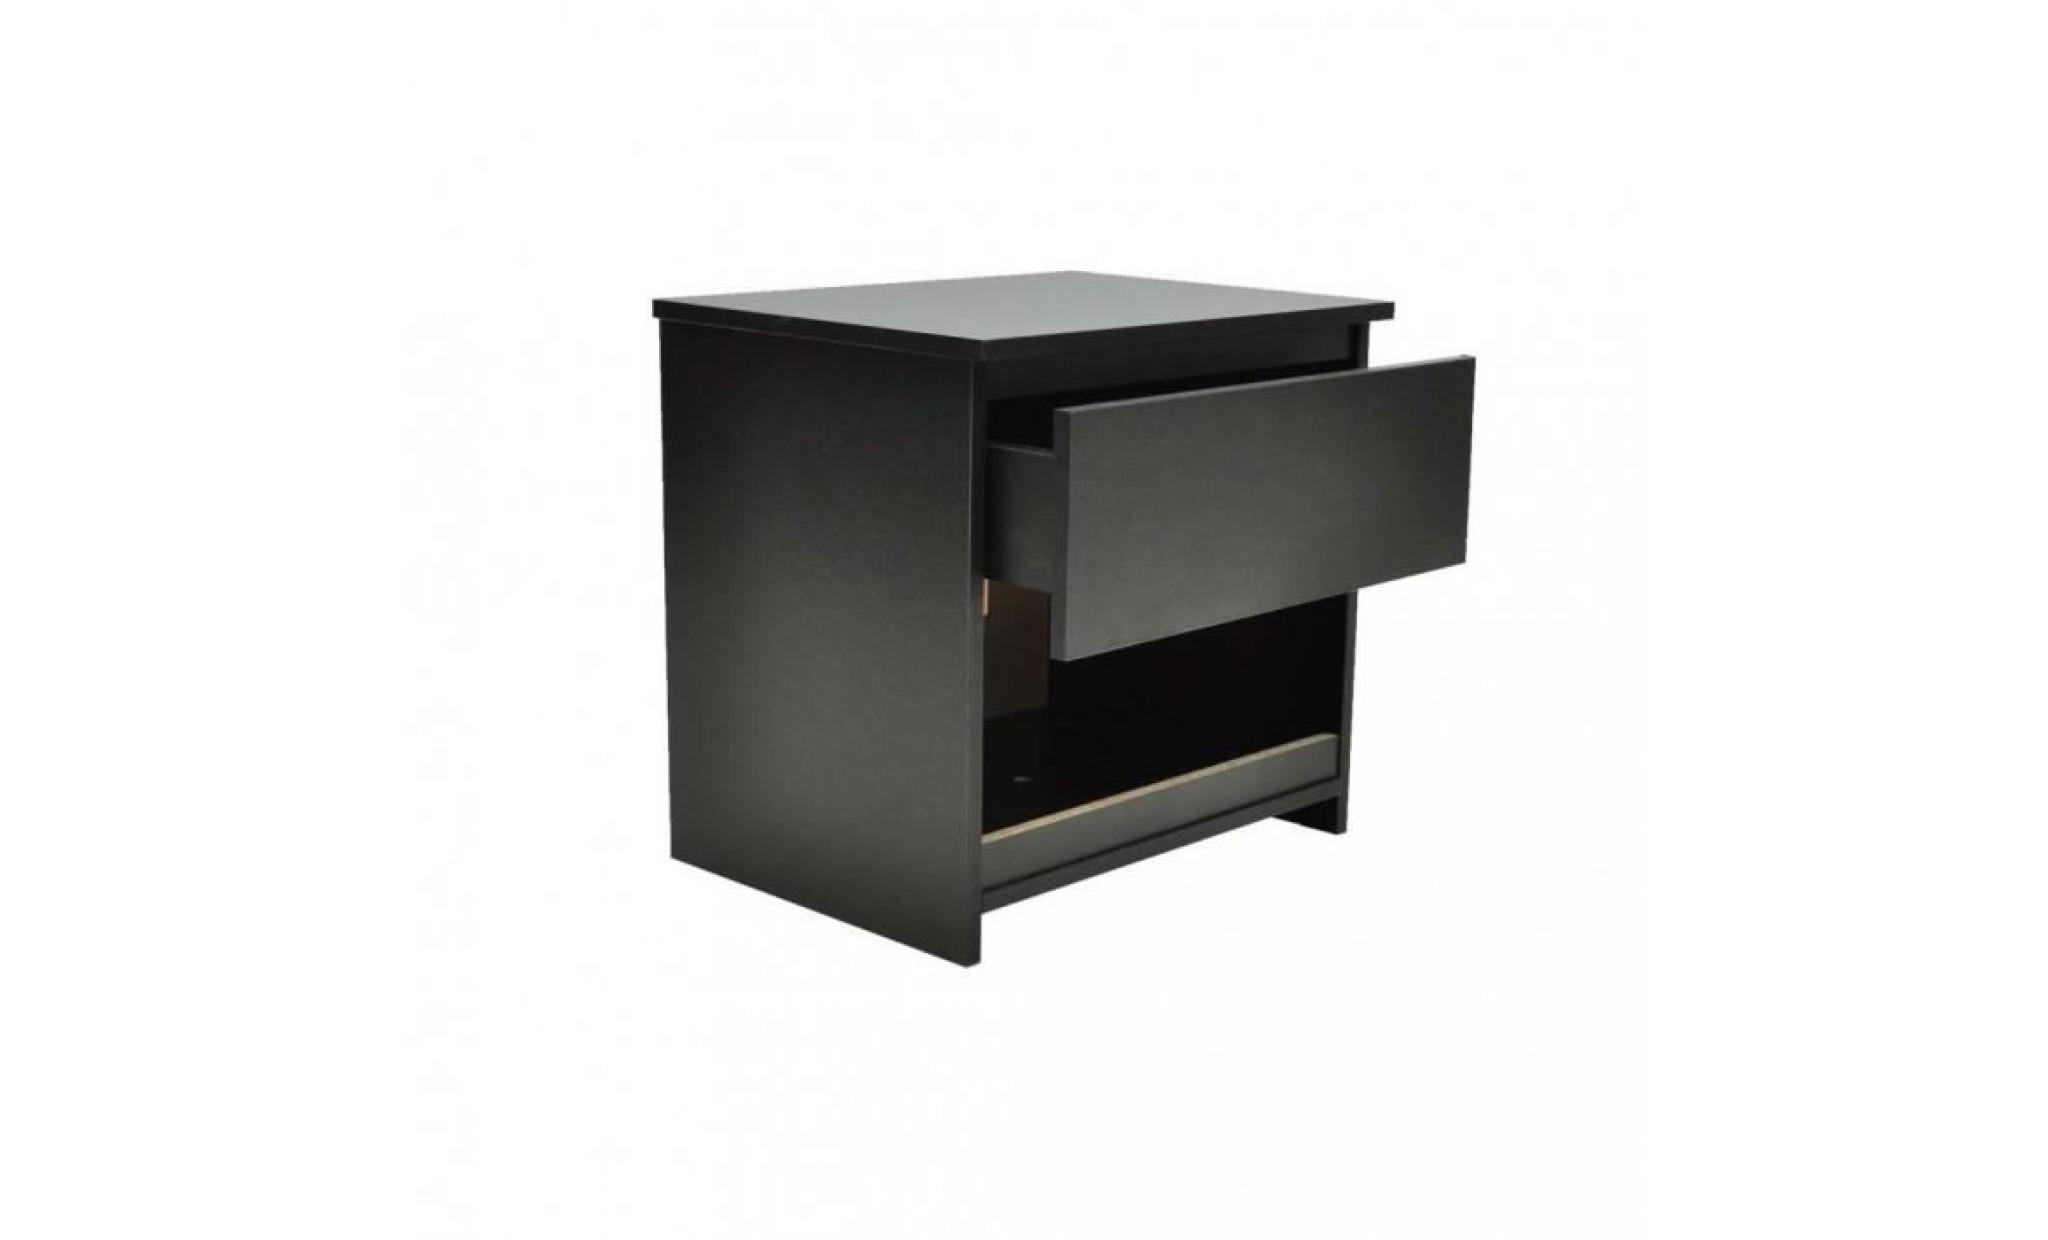 r168 couleur noir nassau cette table d'appoint noire est ideale pour une utilisation